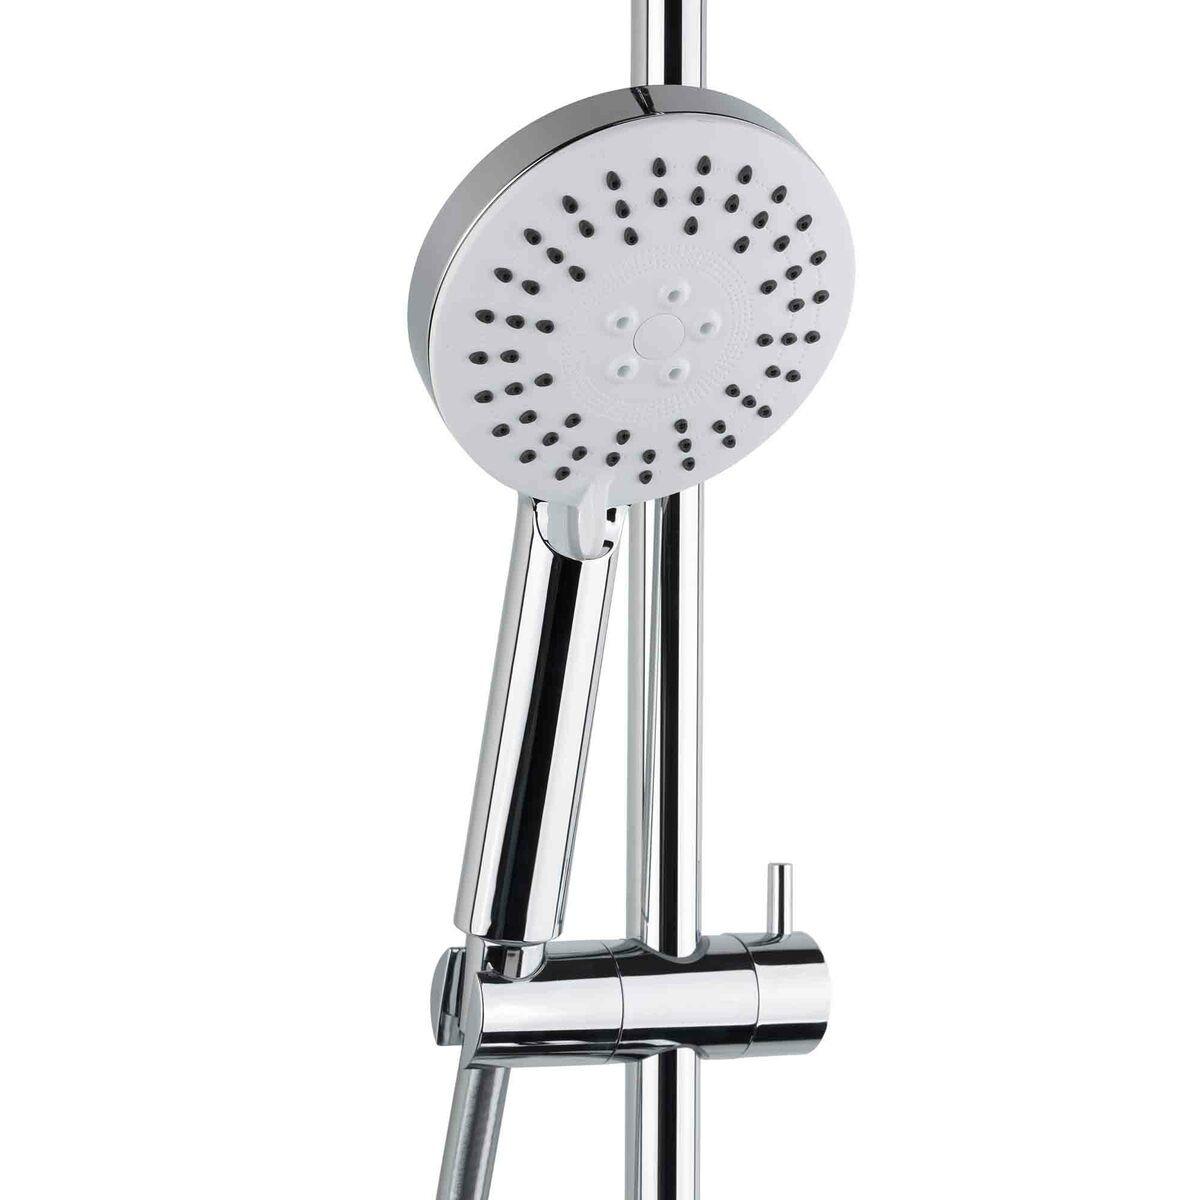 Colonne de douche avec mitigeur mécanique, Blanc/Chrome (SATSSPKP)